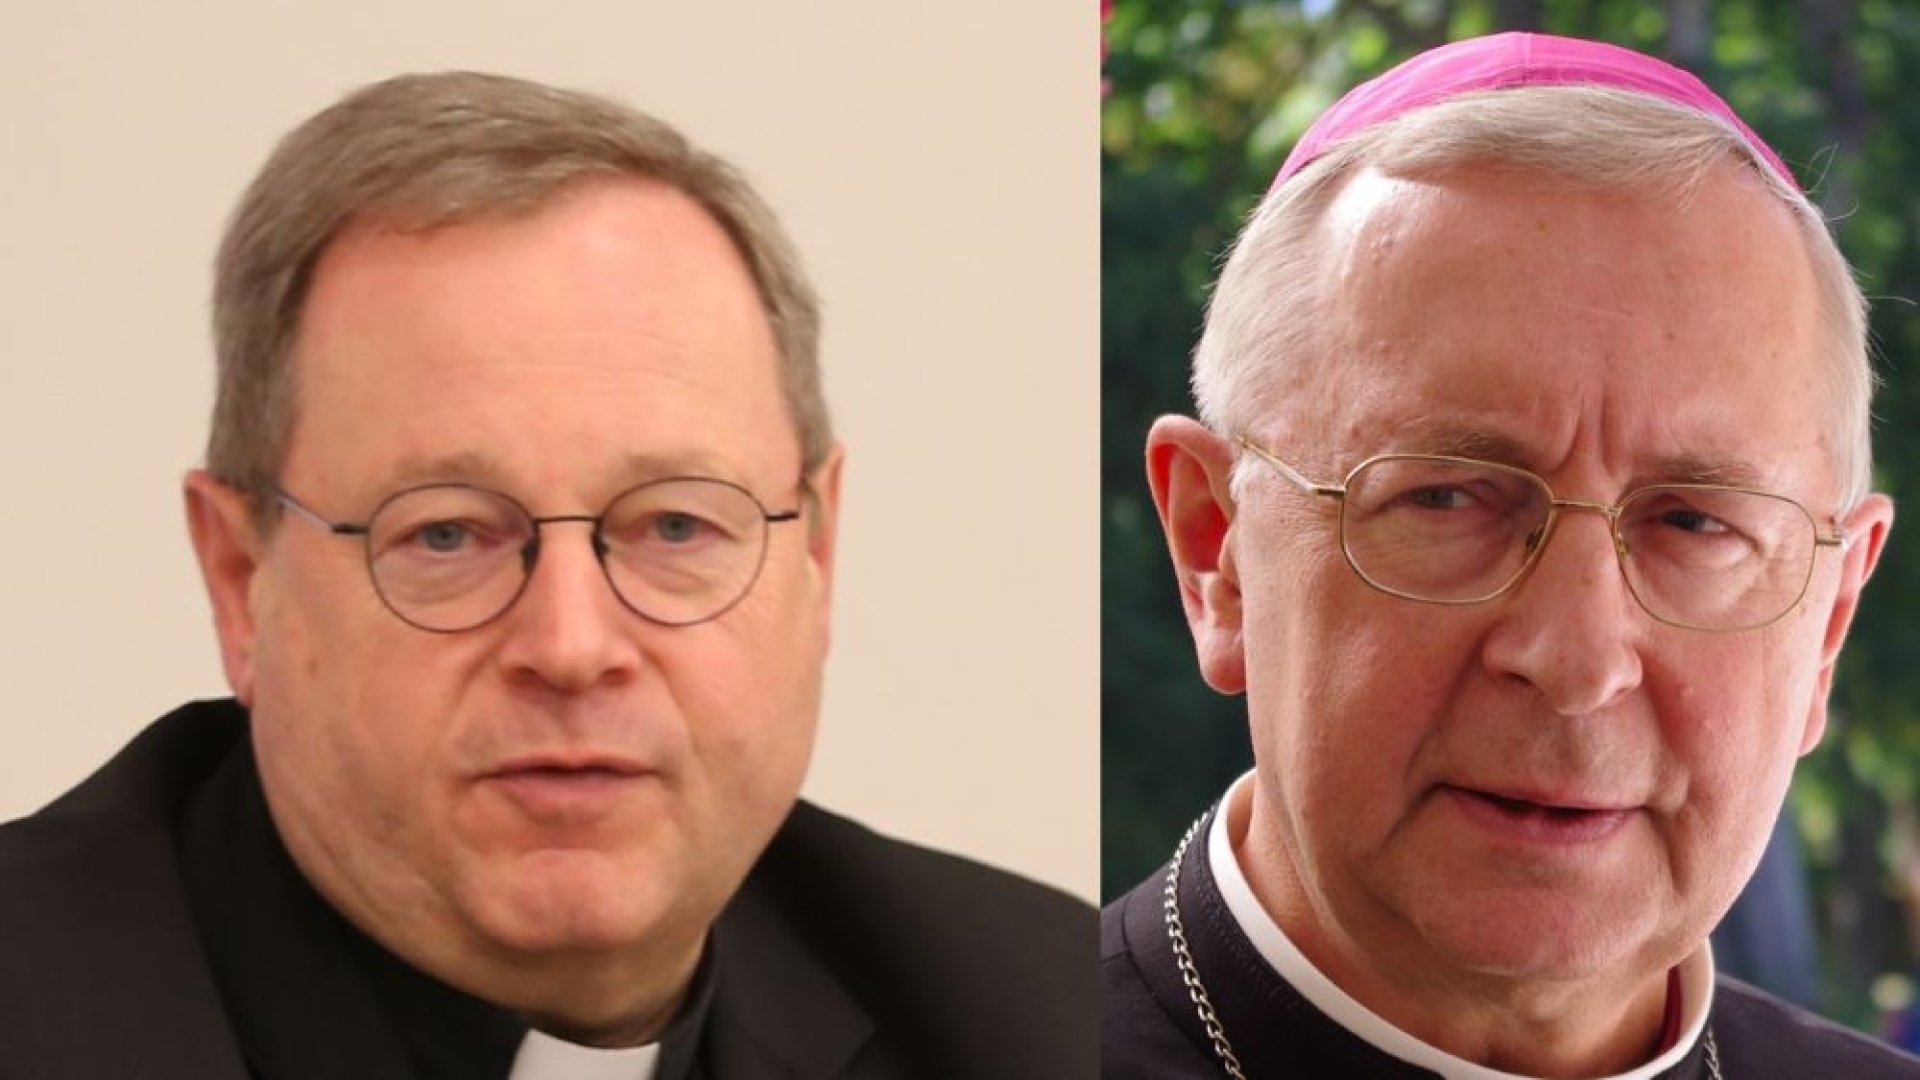 Chi sono i nuovi presidenti dei vescovi di Austria e Portogallo